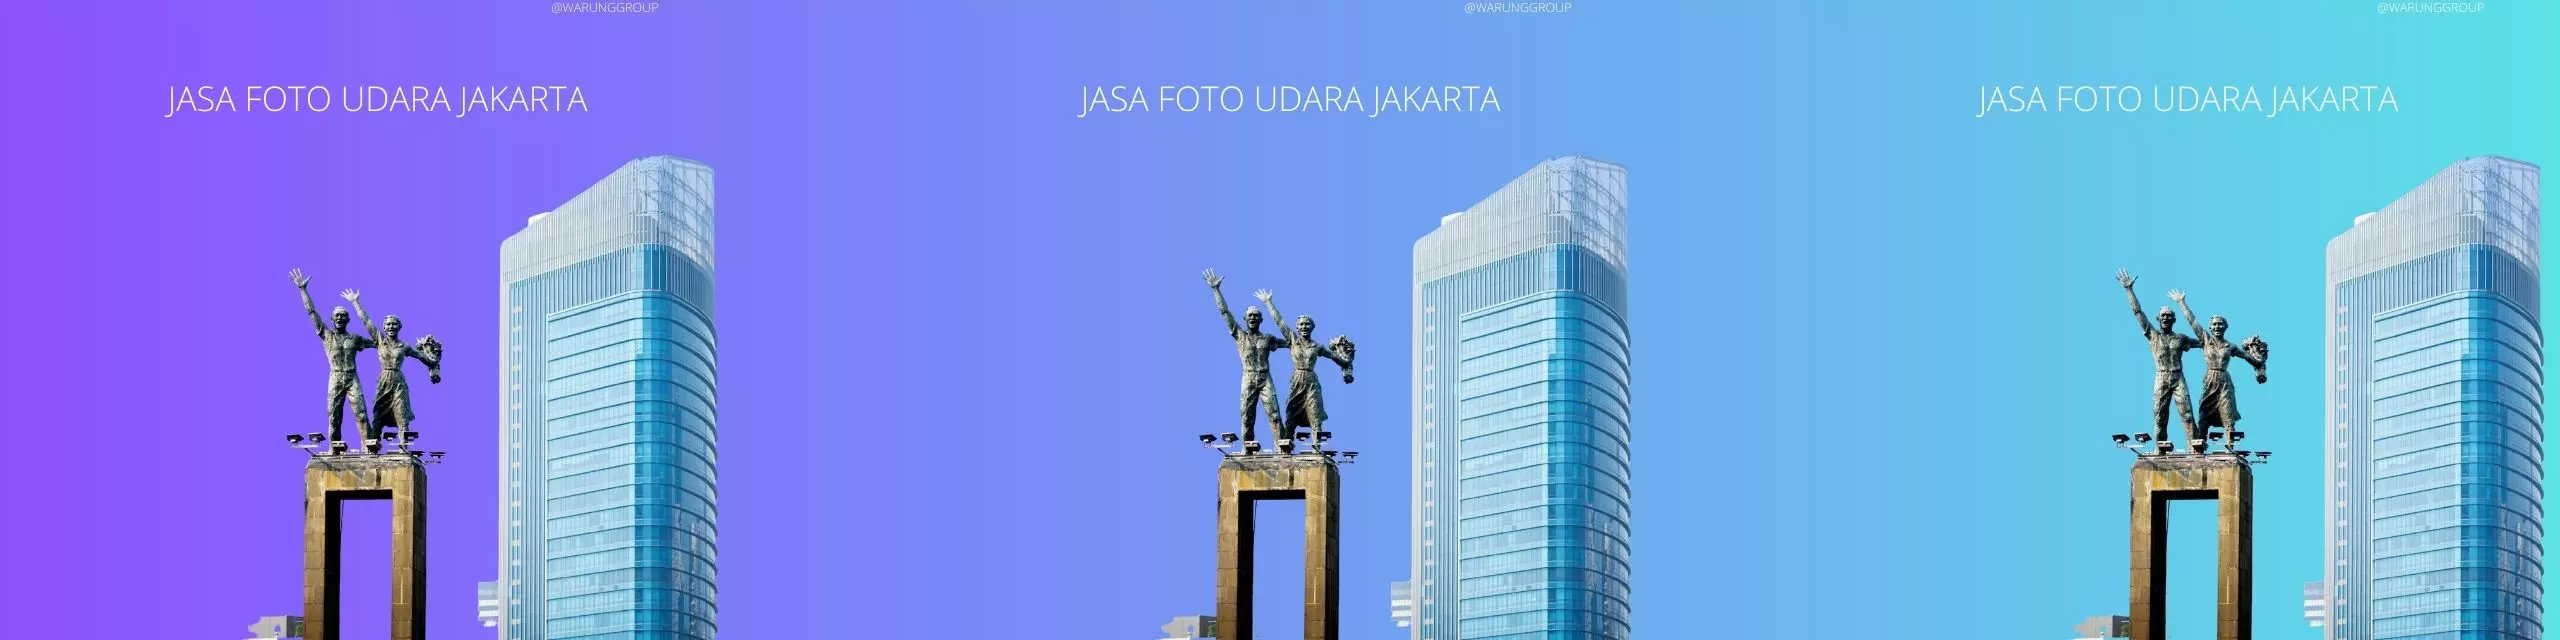 Jasa Foto Udara Jakarta